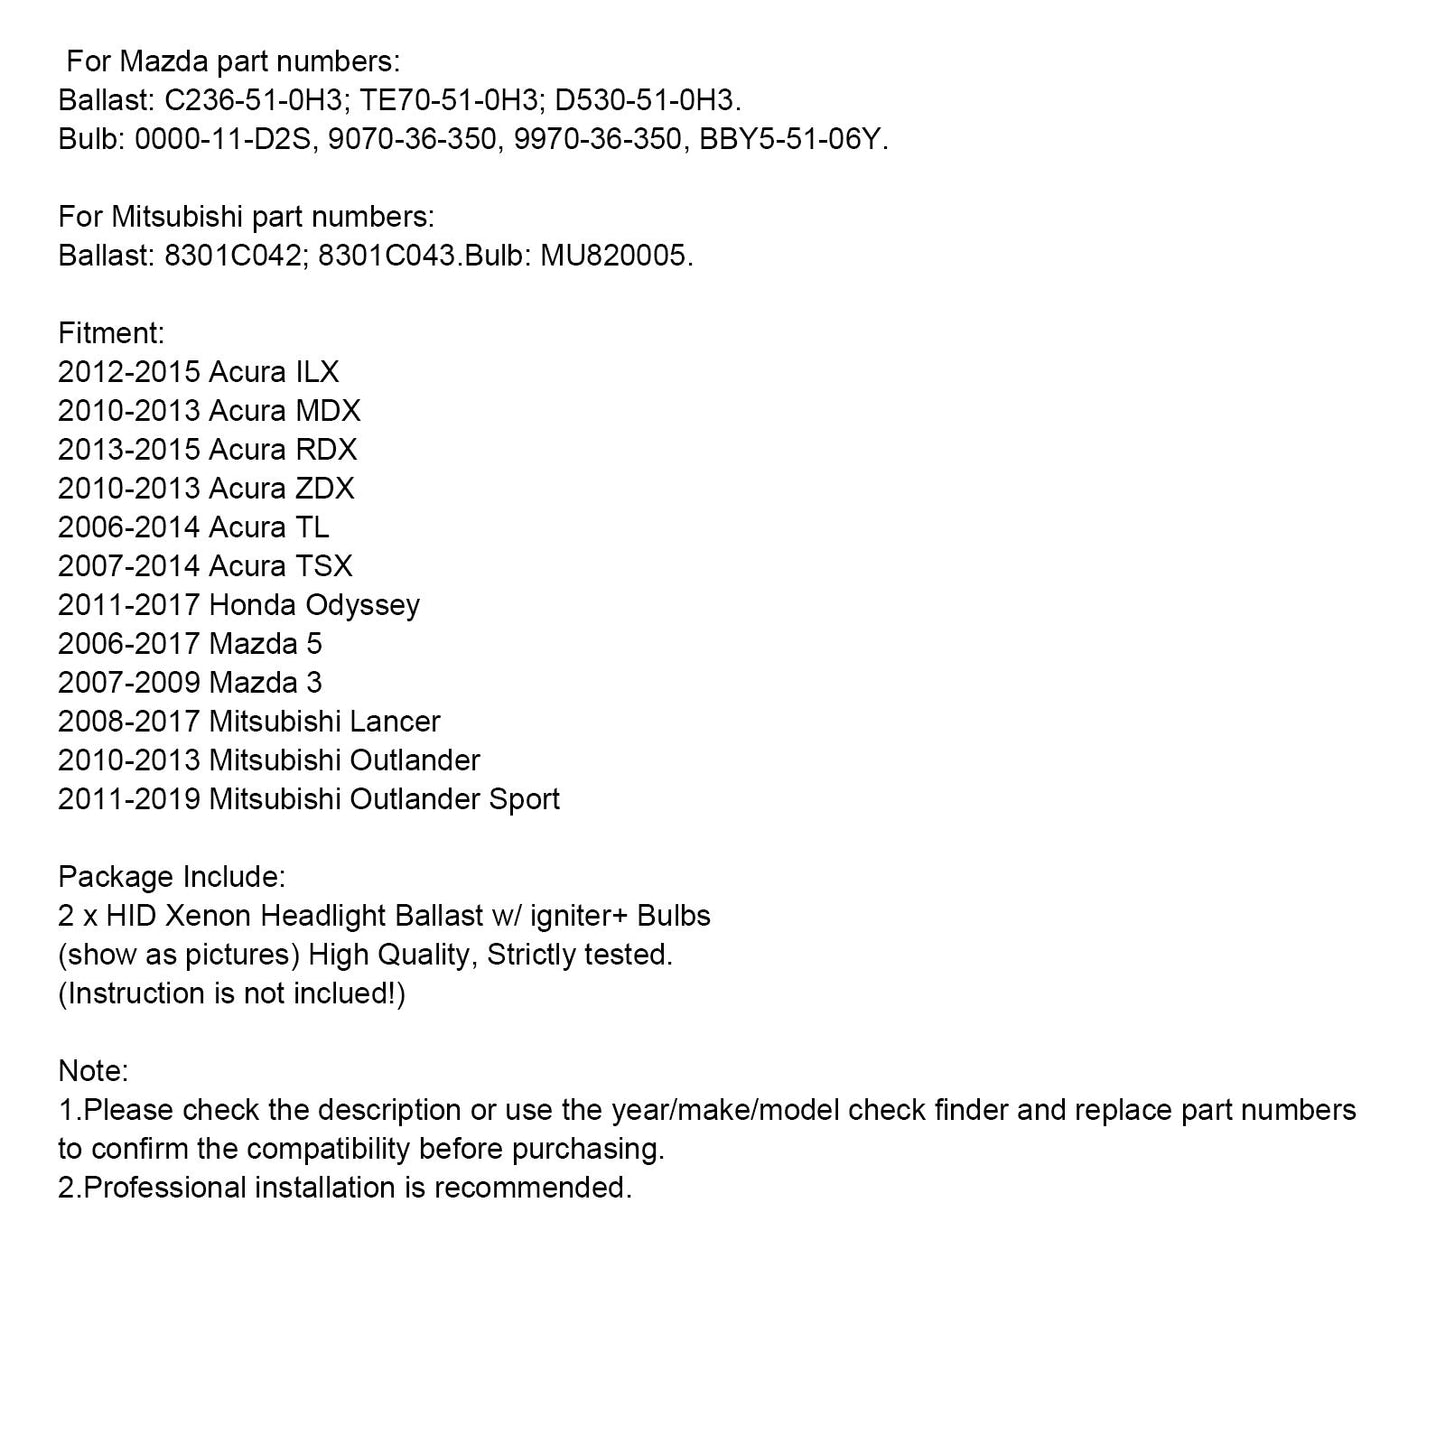 2013-2015 Acura RDX XENON HID Headlight Ballast & Igniter & D2 33119TA0003 Bulb 2Pcs